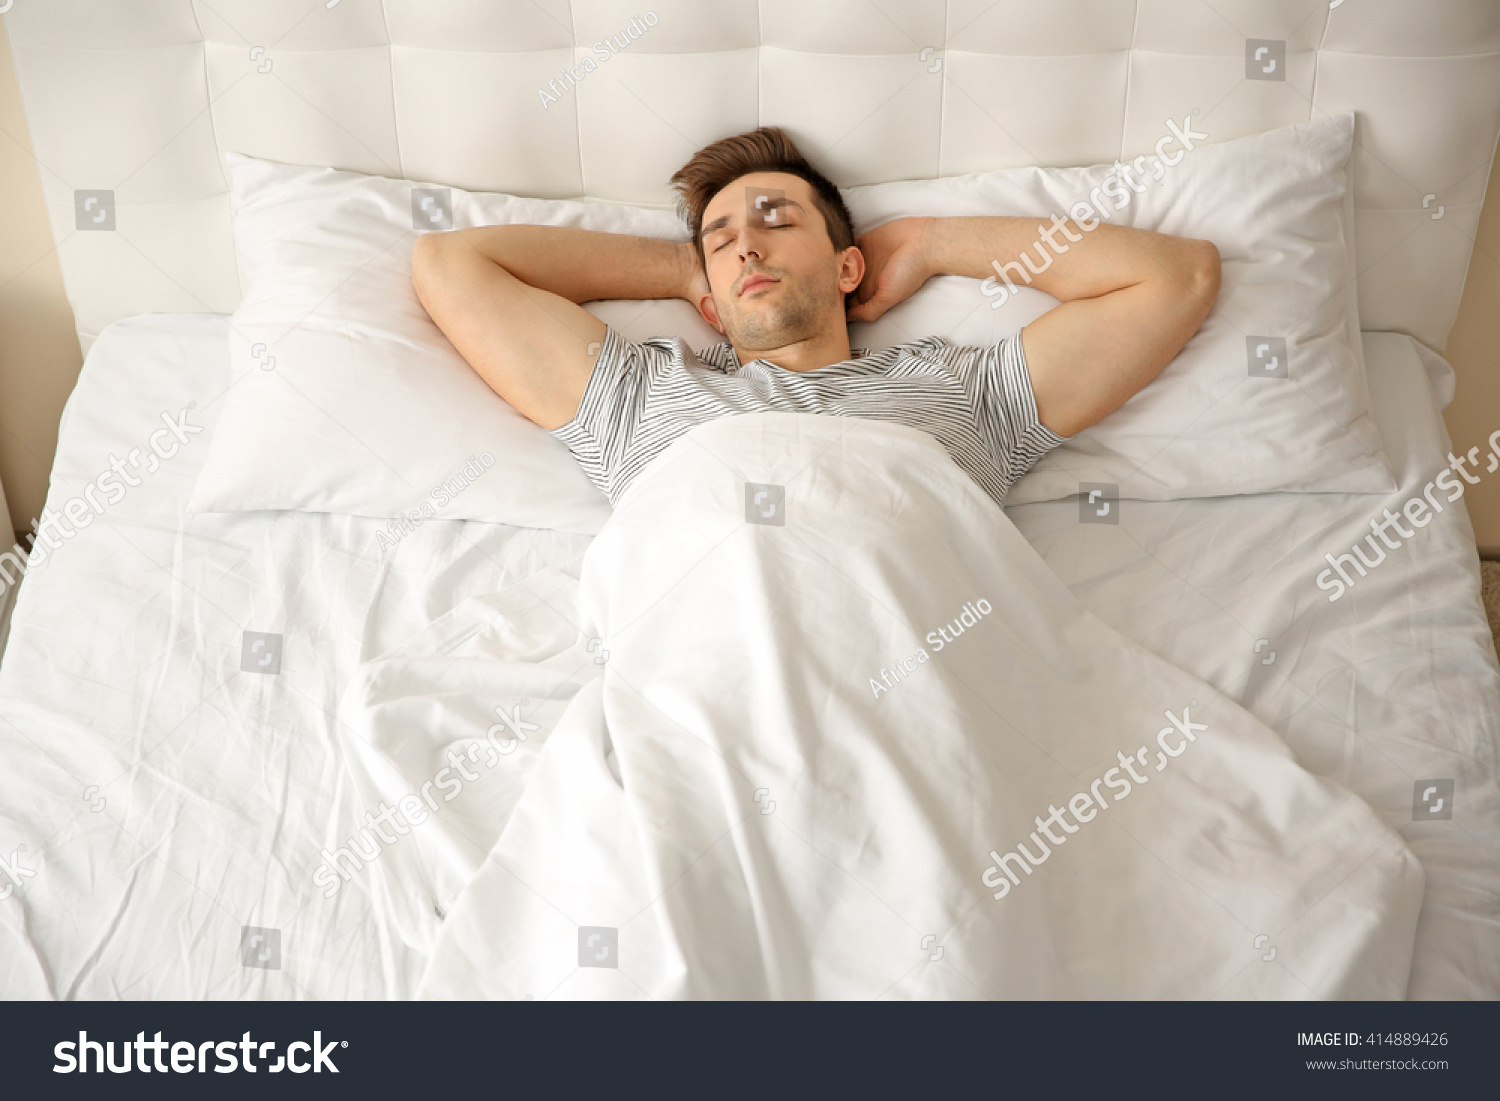 Чужая кровать спать. Сплю один на большой кровати. Во сне диван поломанный. Спать во сне на чужой кровати. Половинка кровати пустует картинка.